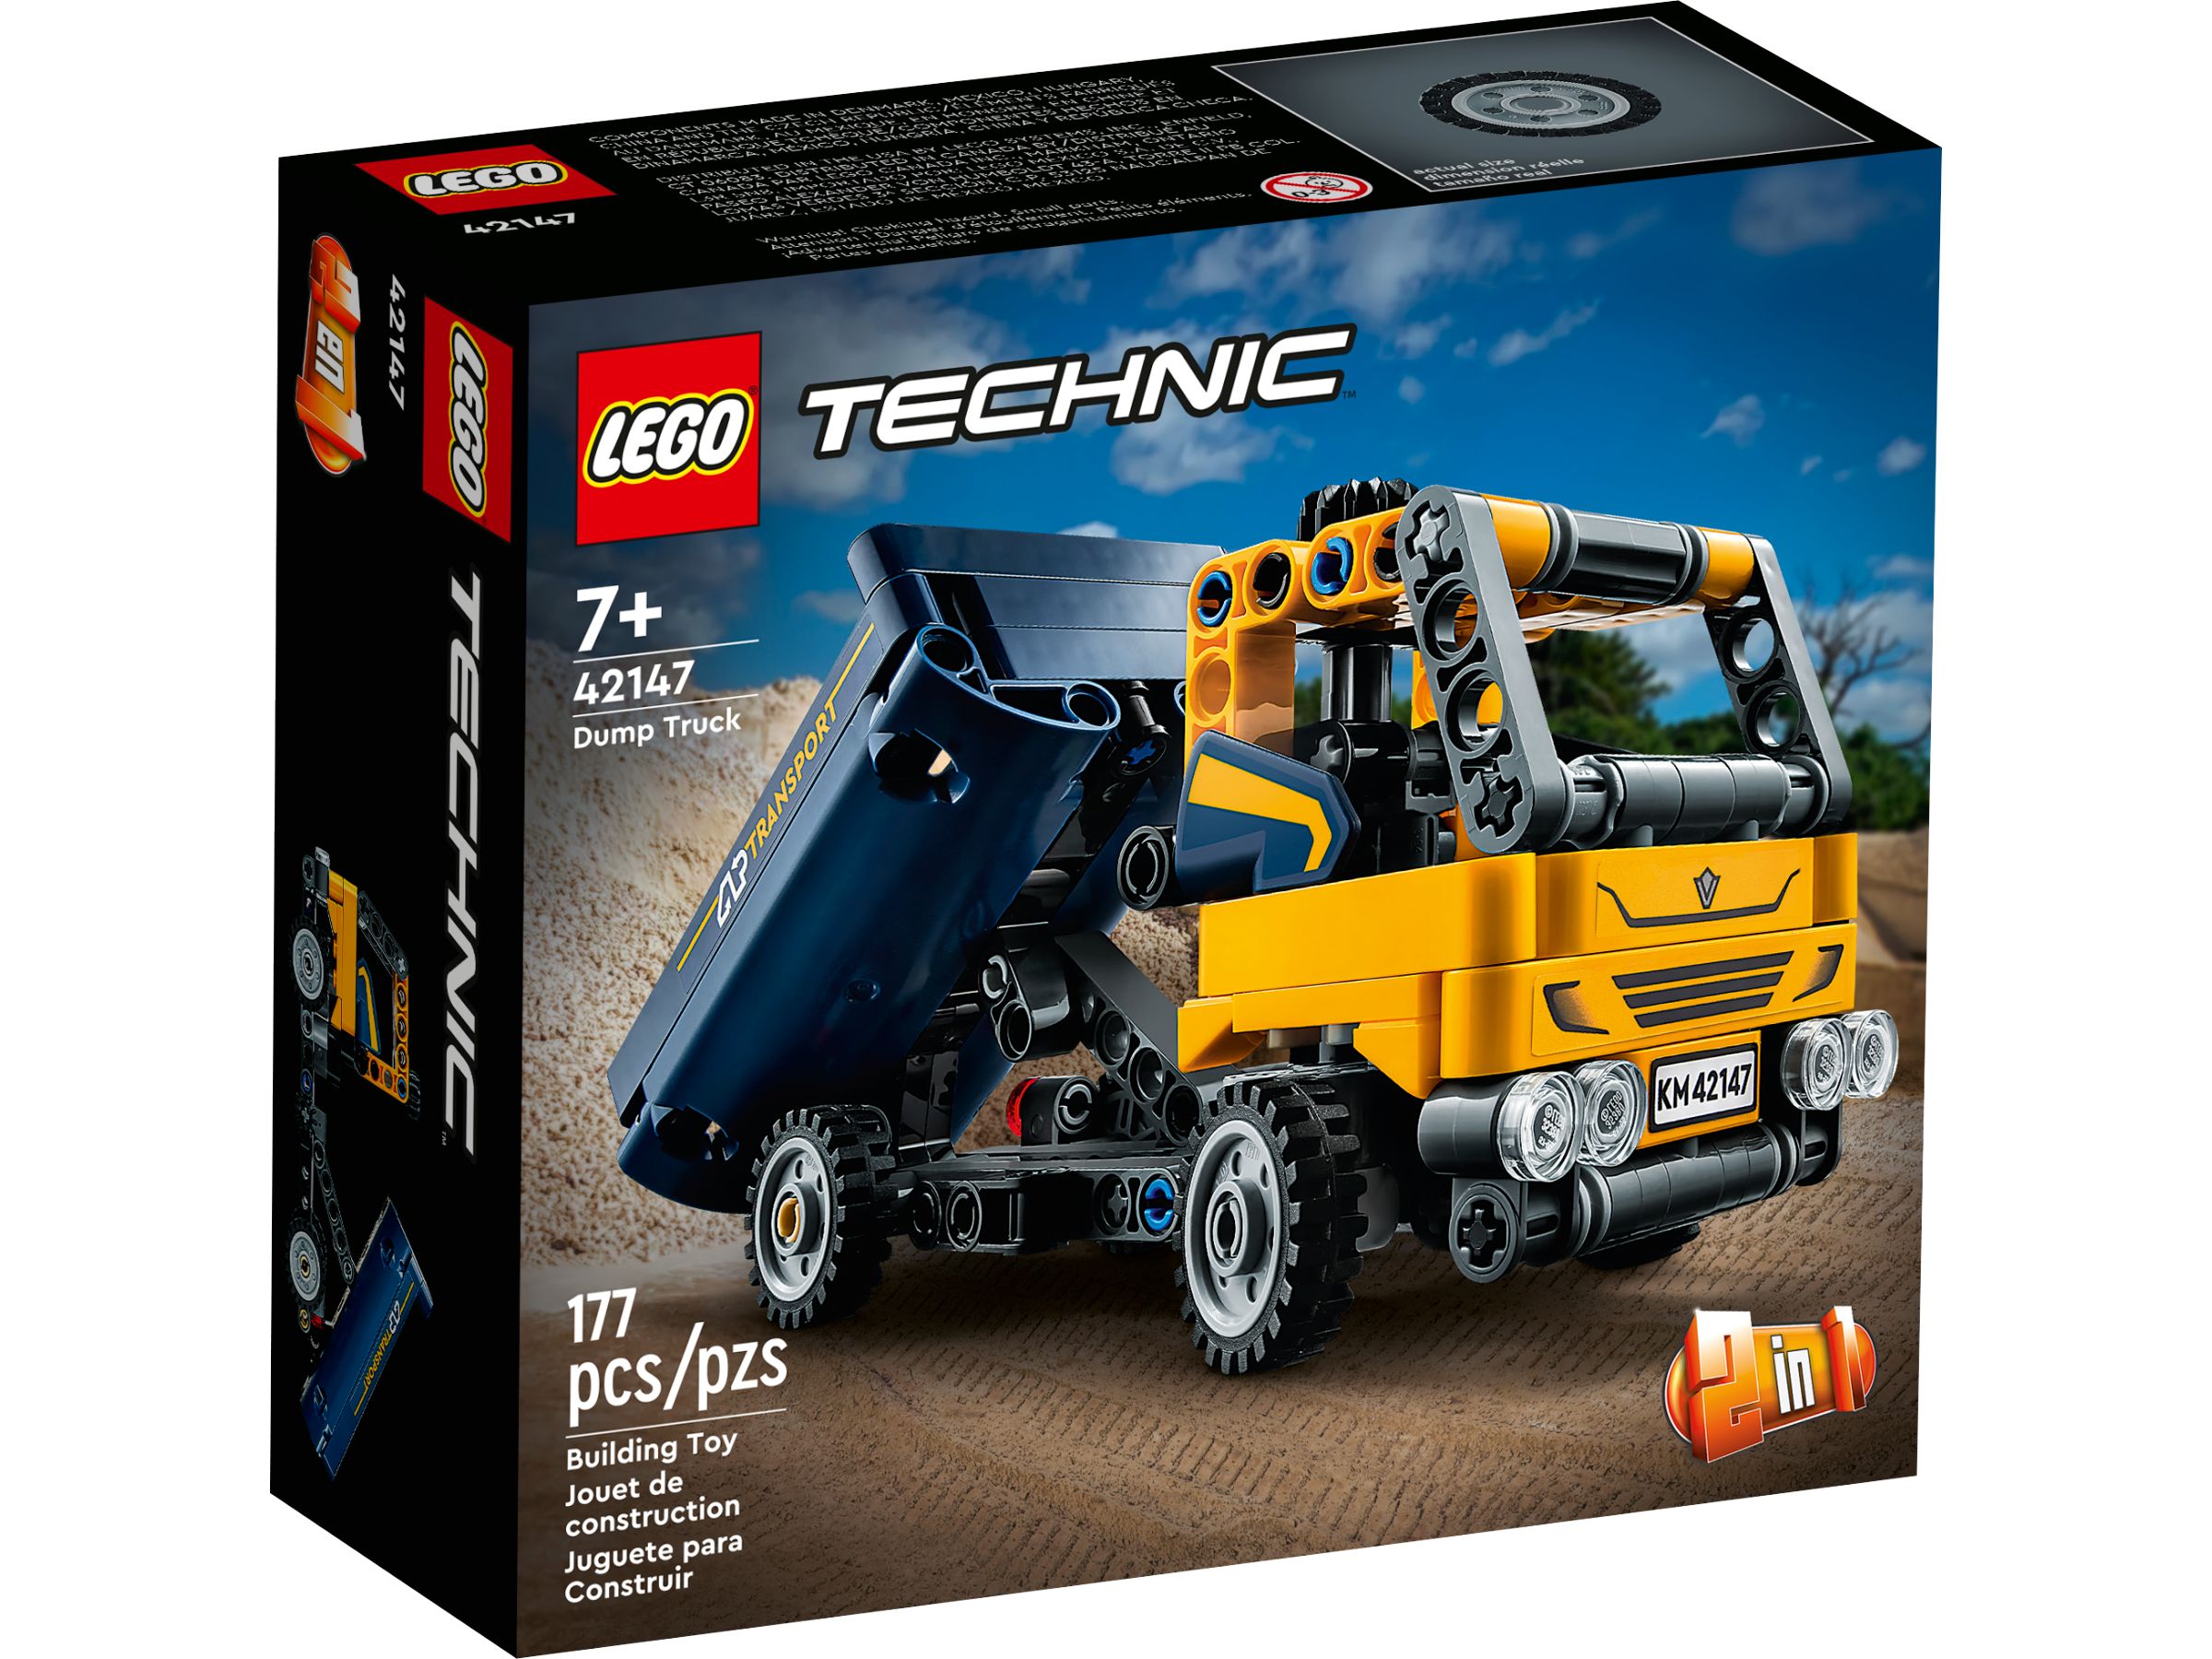 LEGO Technic 42147 Kipplaster LEGO_42147_alt1.jpg